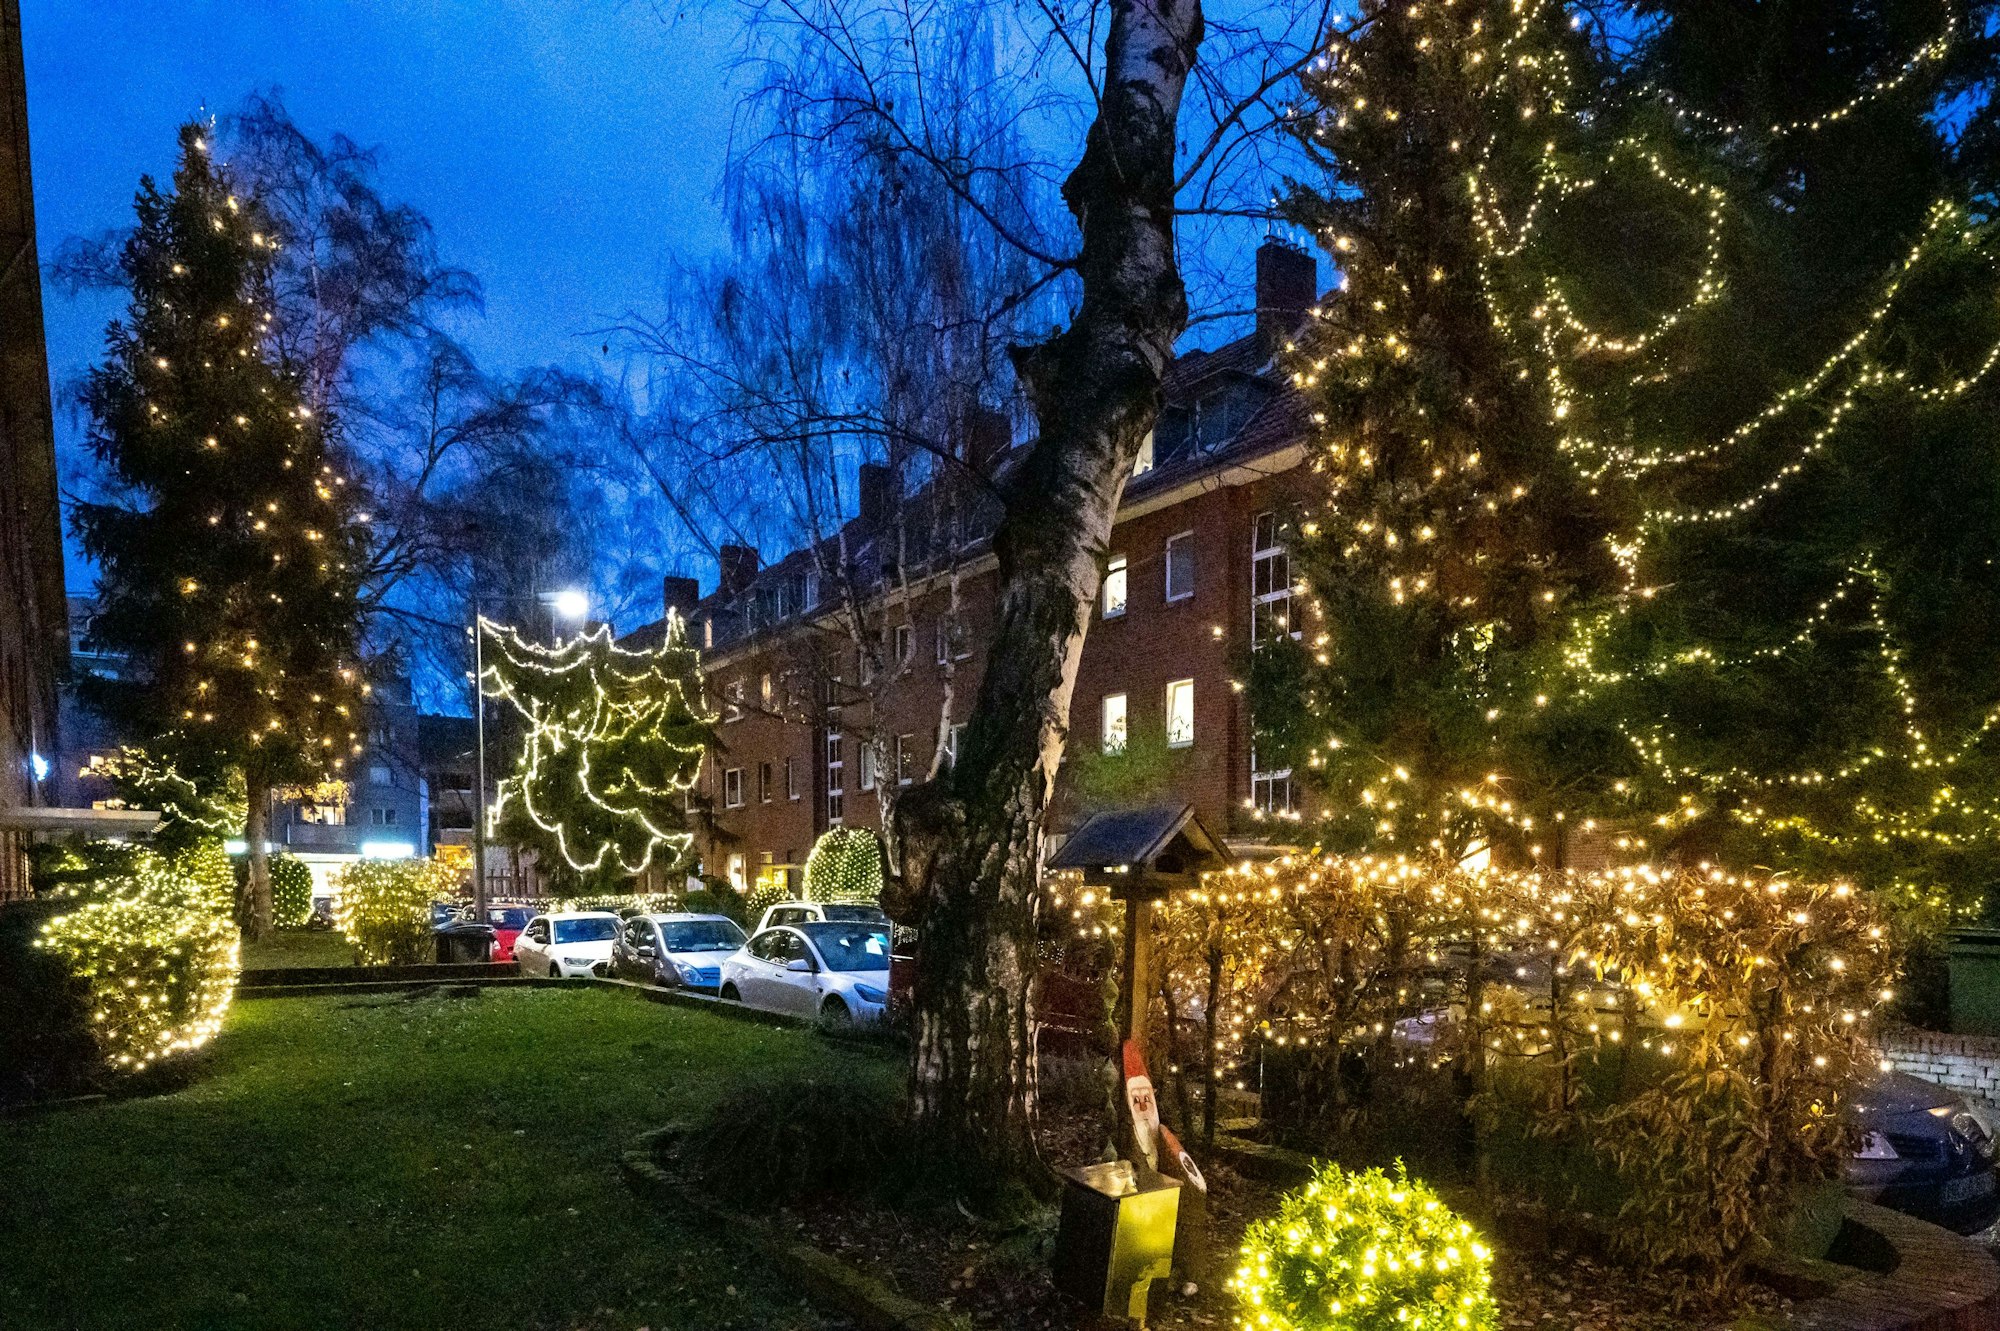 Auf diesem im Jahr 2021 aufgenommenen Foto ist die Hummelsbergstraße weihnachtlich erleuchtet. In Bäumen, Hecken und Sträuchern hängen zahlreiche Lichterketten.